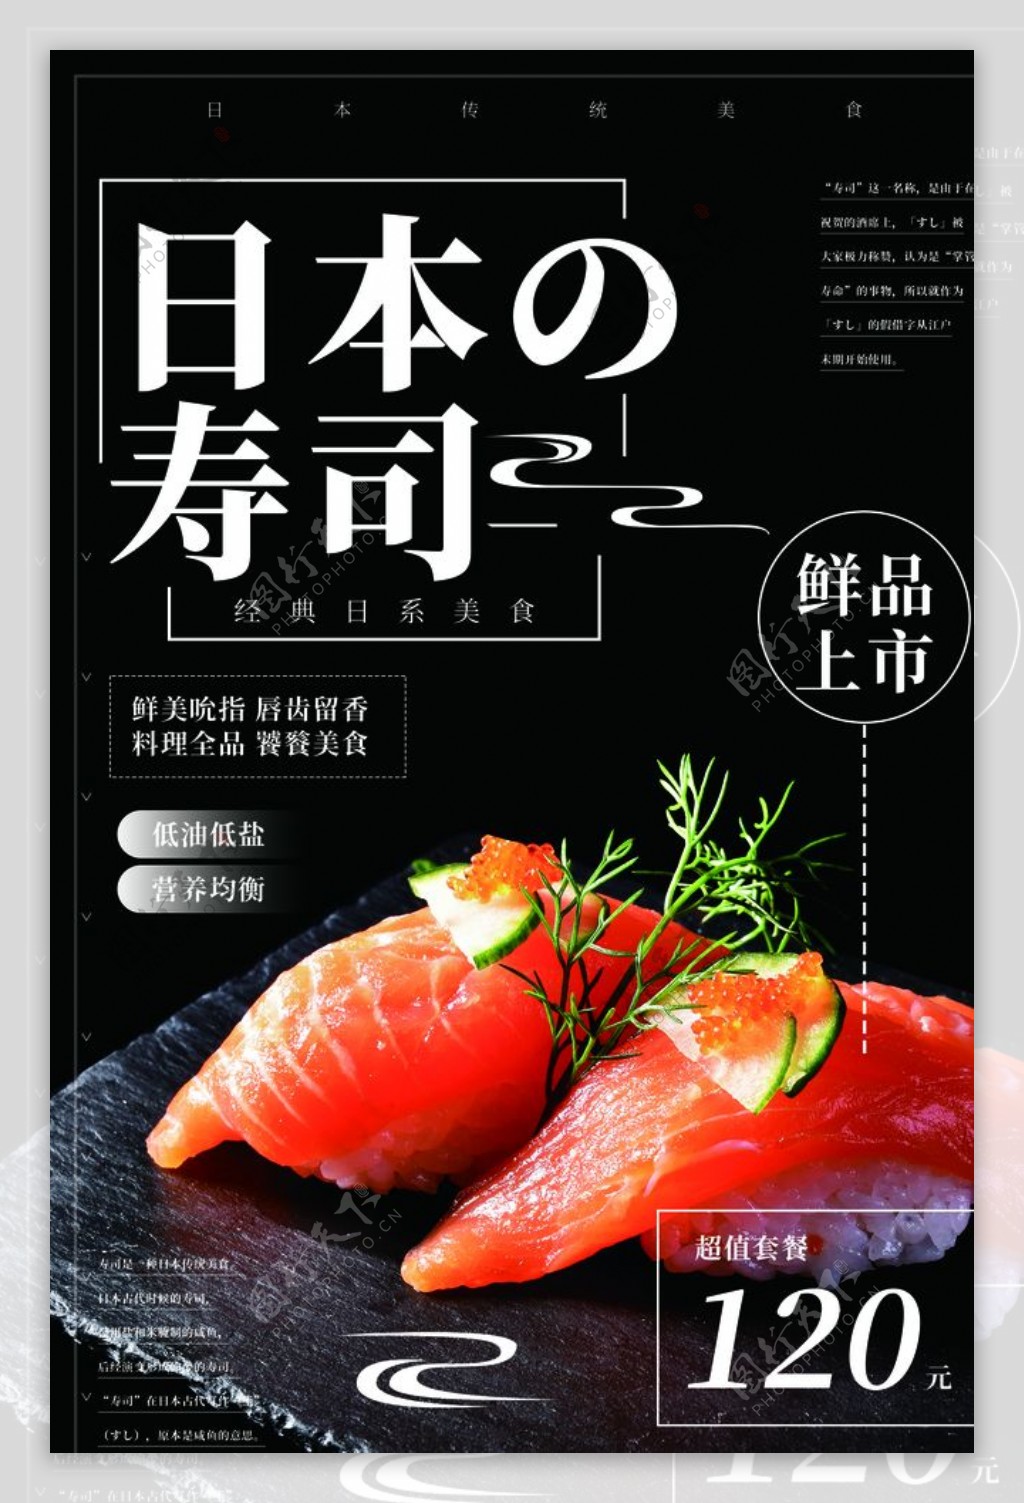 日本寿司美食活动宣传海报素材图片